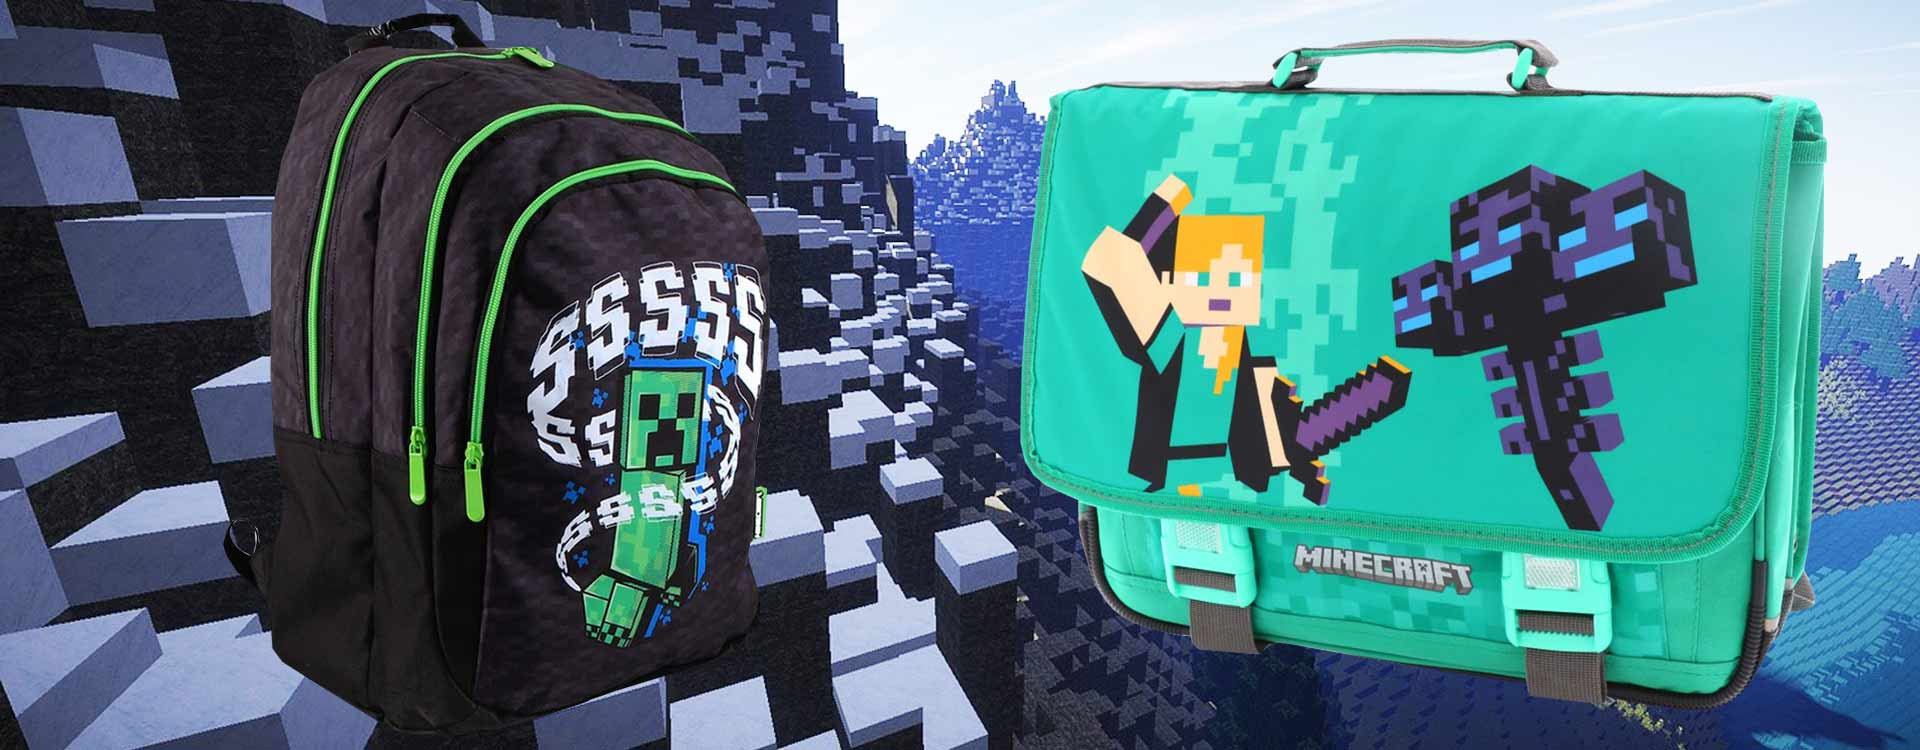 Cartable, sac à dos ou trolley : quel est le meilleur sac d’école Minecraft pour votre enfant ?